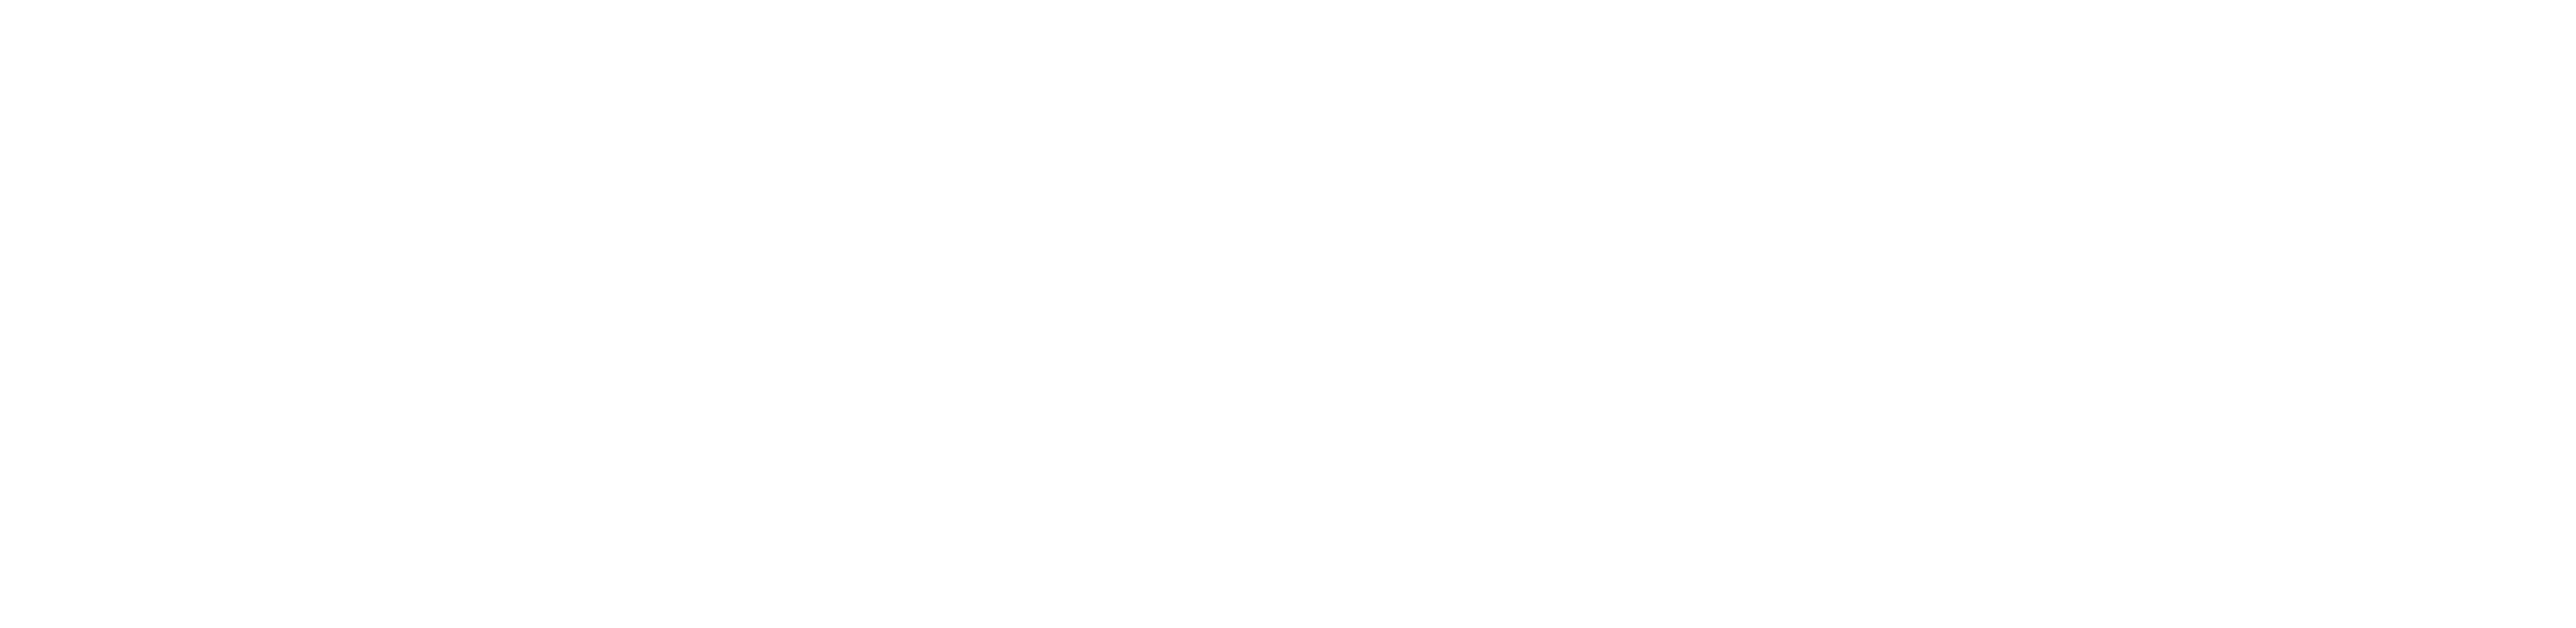 lucky-nick.com